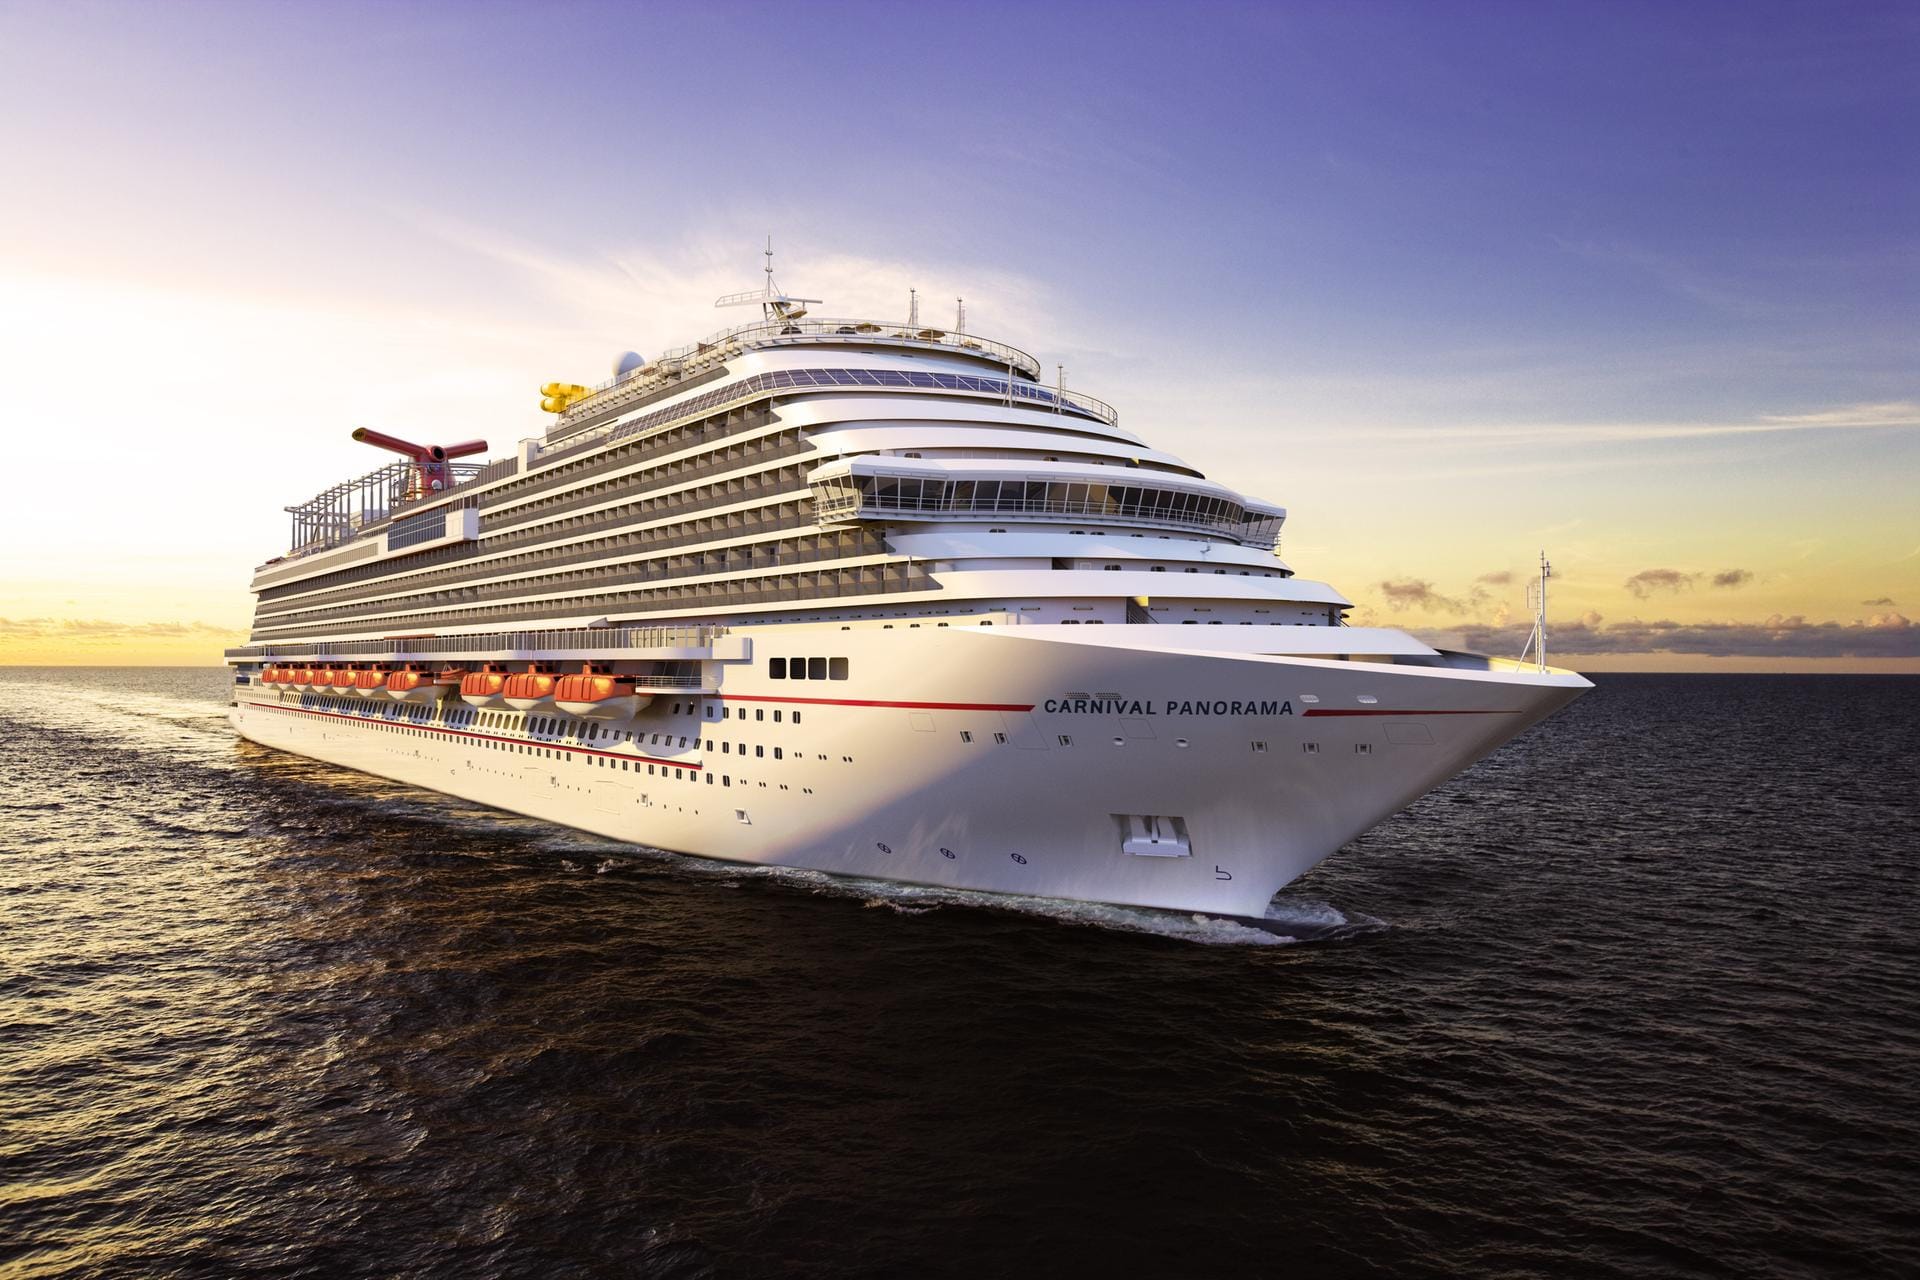 Drittes Schiff der Vista-Klasse von Carnival Cruise Line: Die "Carnival Panorama" bricht ab Dezember 2019 in Los Angeles zu Fahrten an die mexikanische Riviera auf.